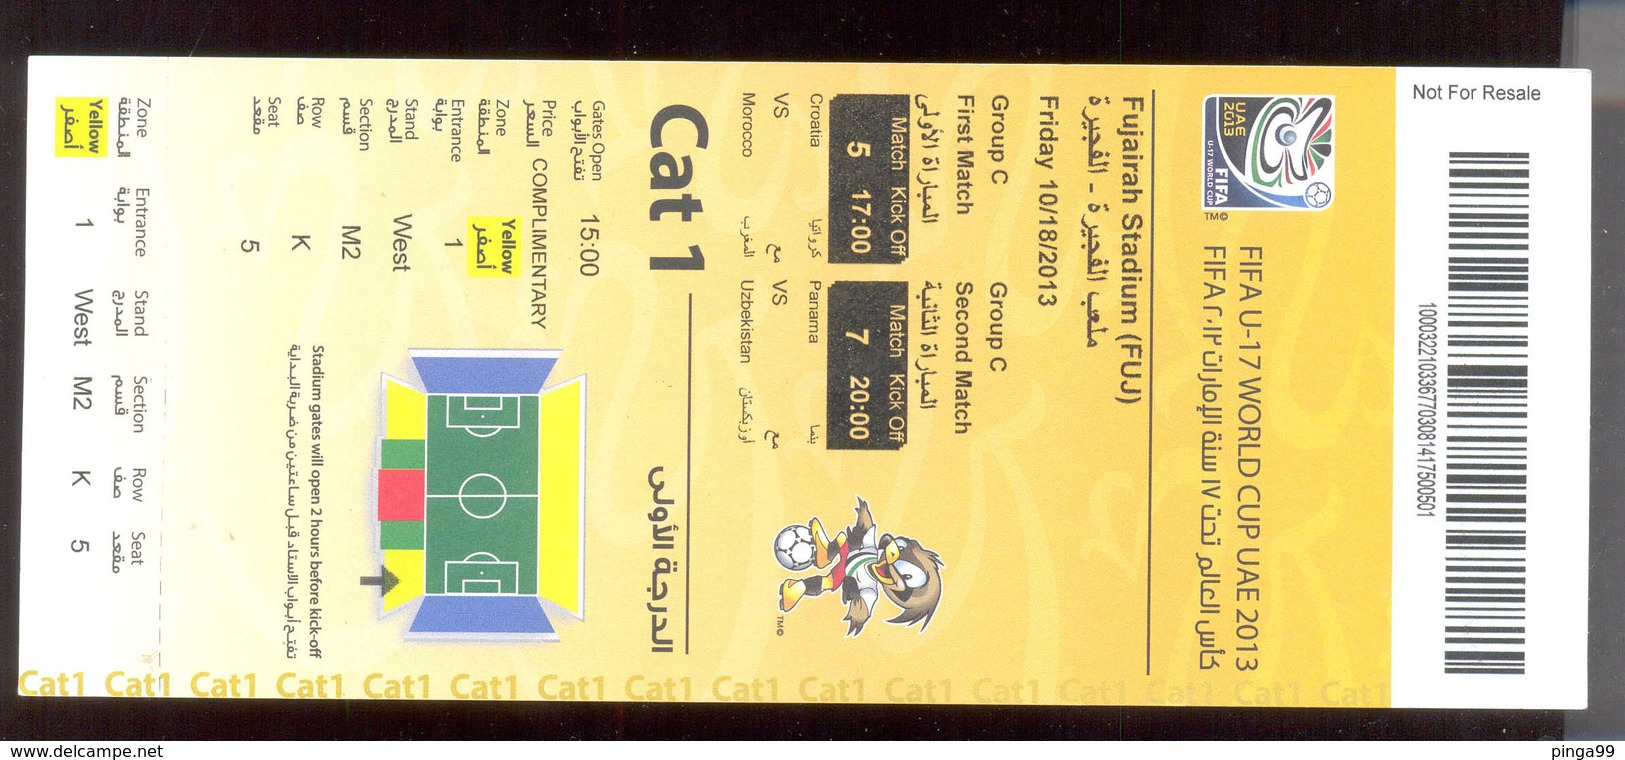 Football FIFA U-17 WORLD CUP UAE 2013 CROATIA Vs MOROOCO TICKET - Match Tickets